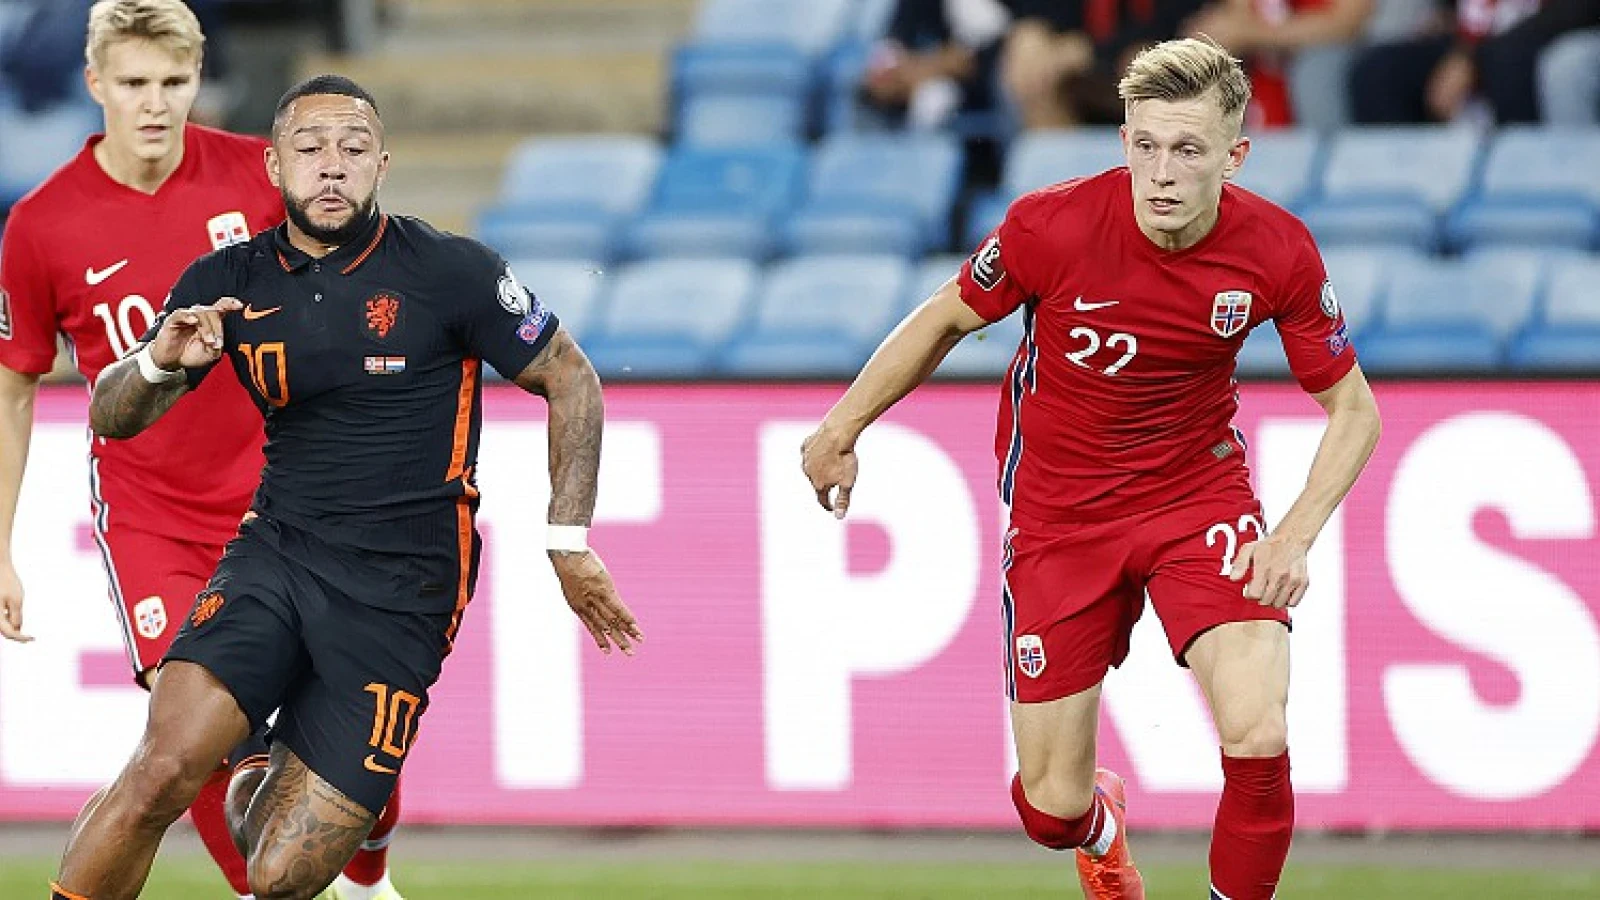 Noorwegen speelt met Pedersen en zonder Aursnes gelijk tegen Letland